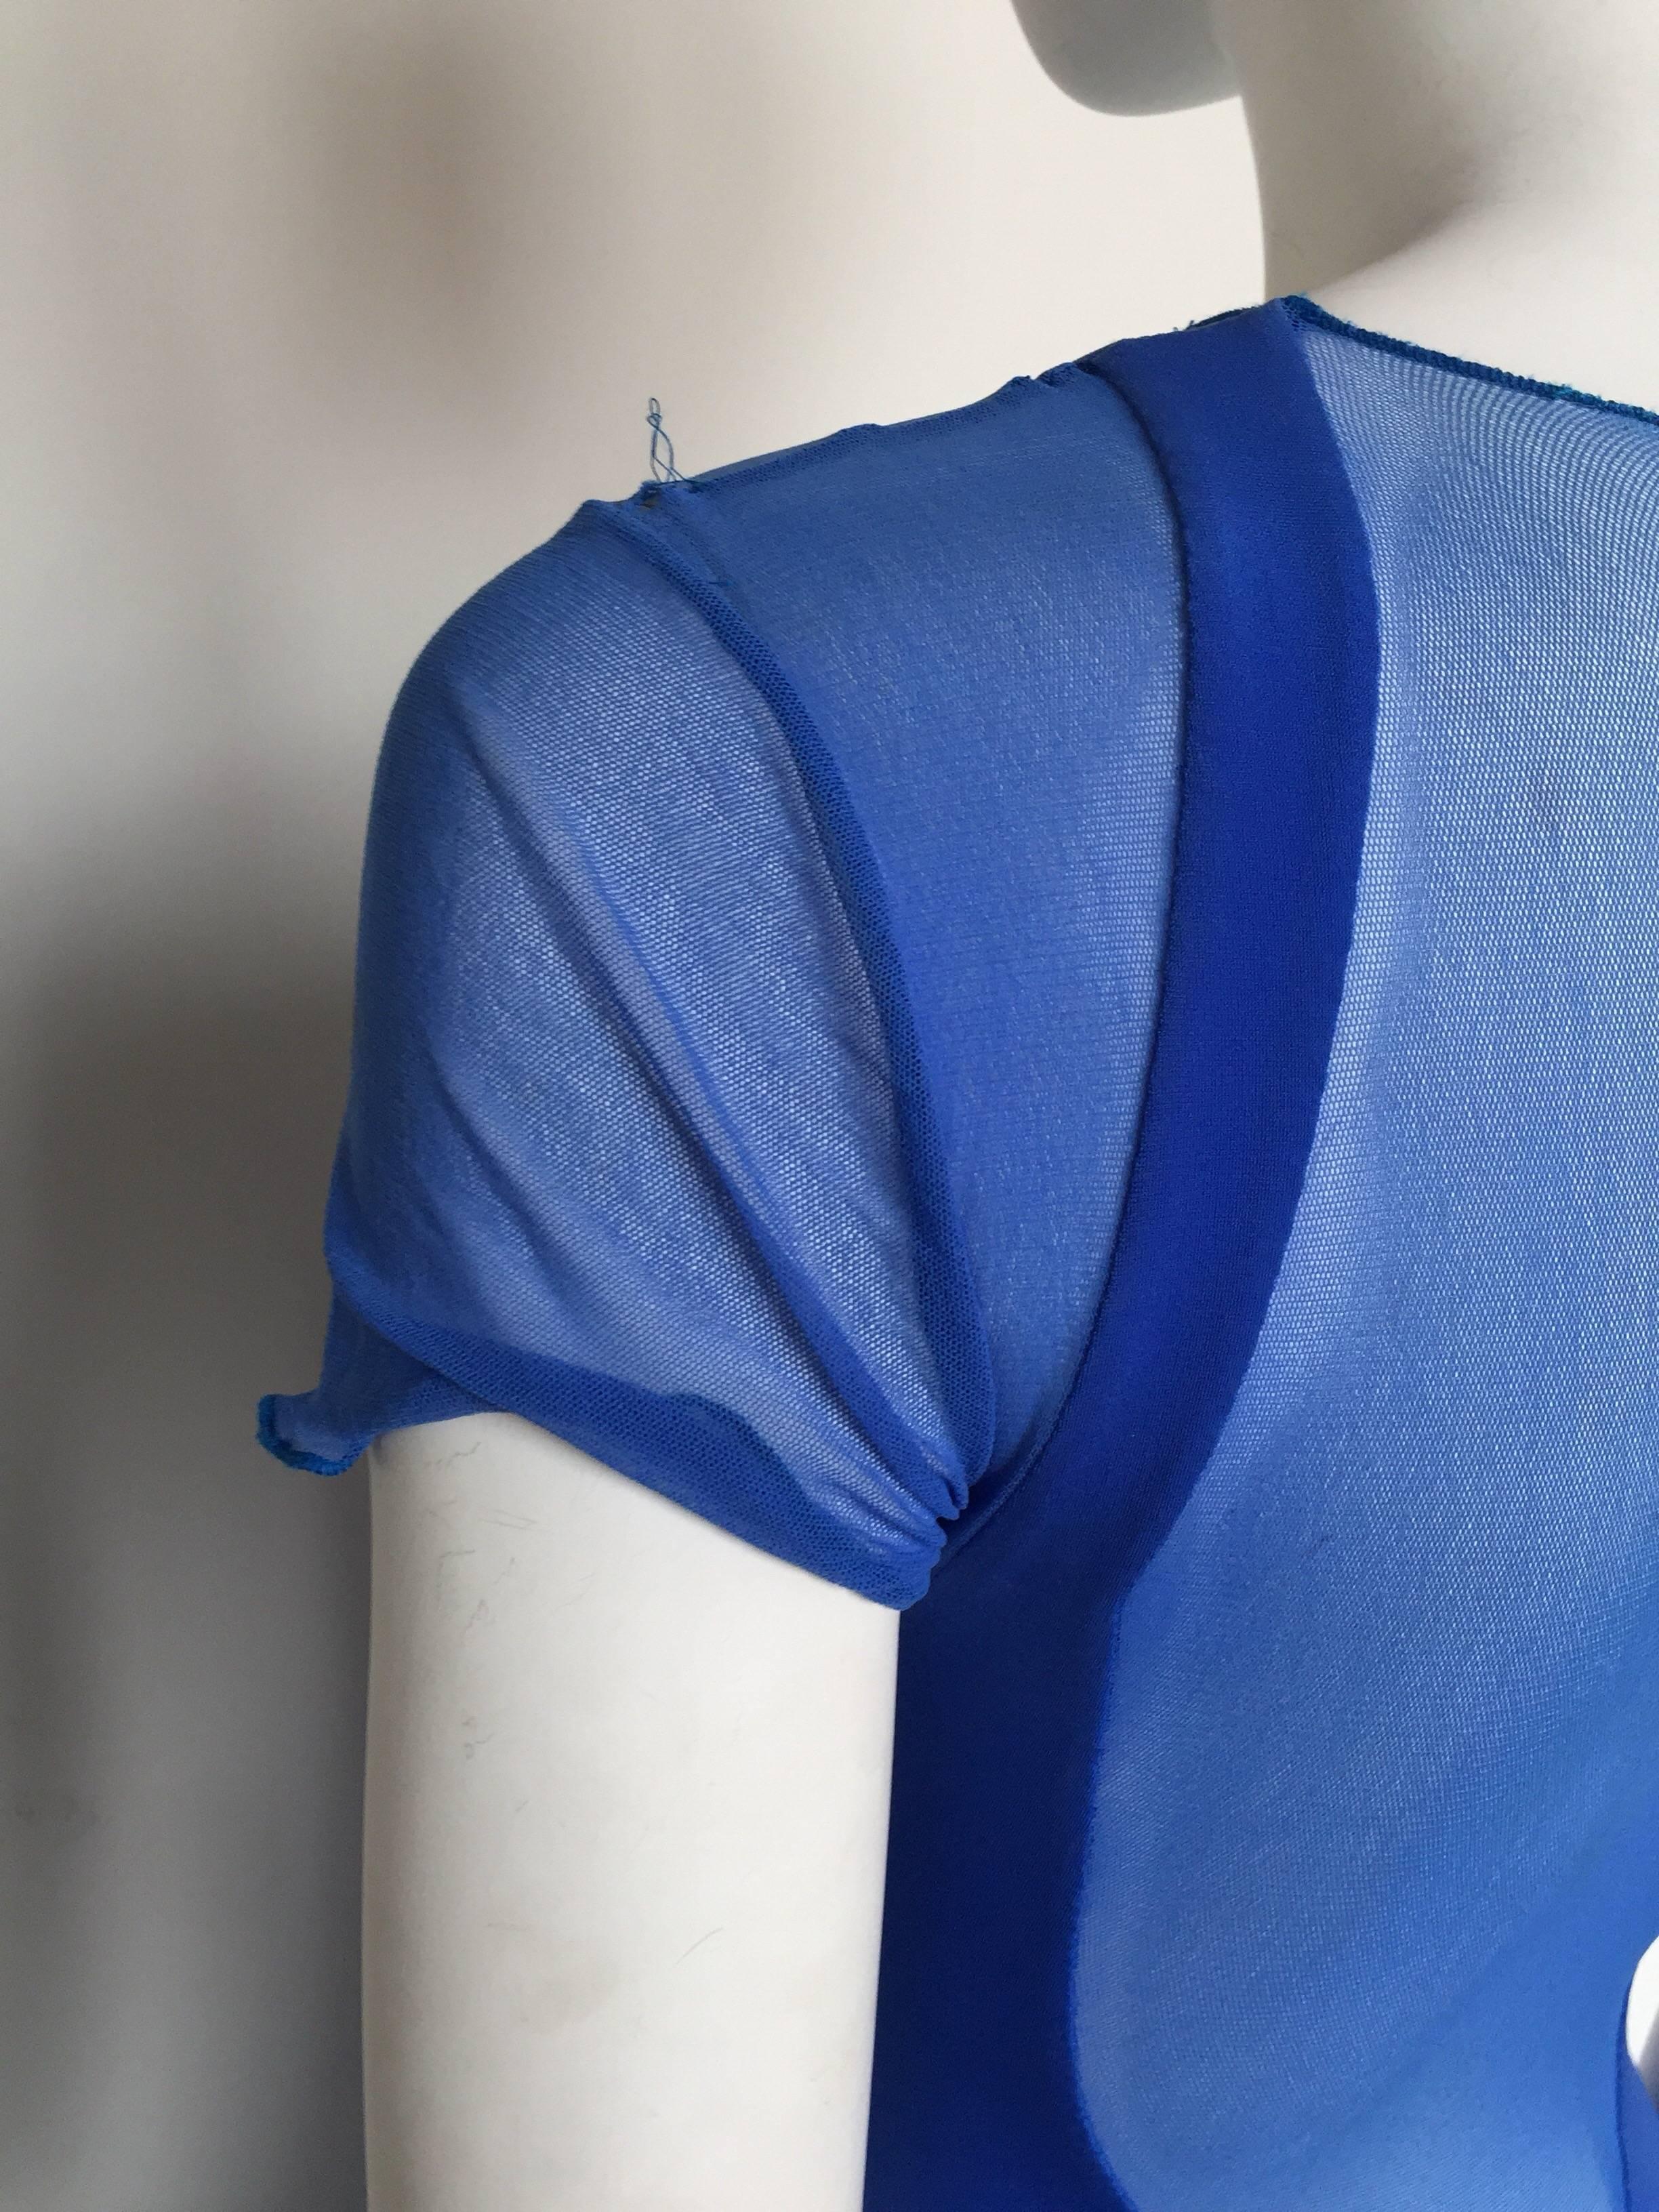 Women's or Men's Karl Lagerfeld royal blue mesh form fittings dress For Sale